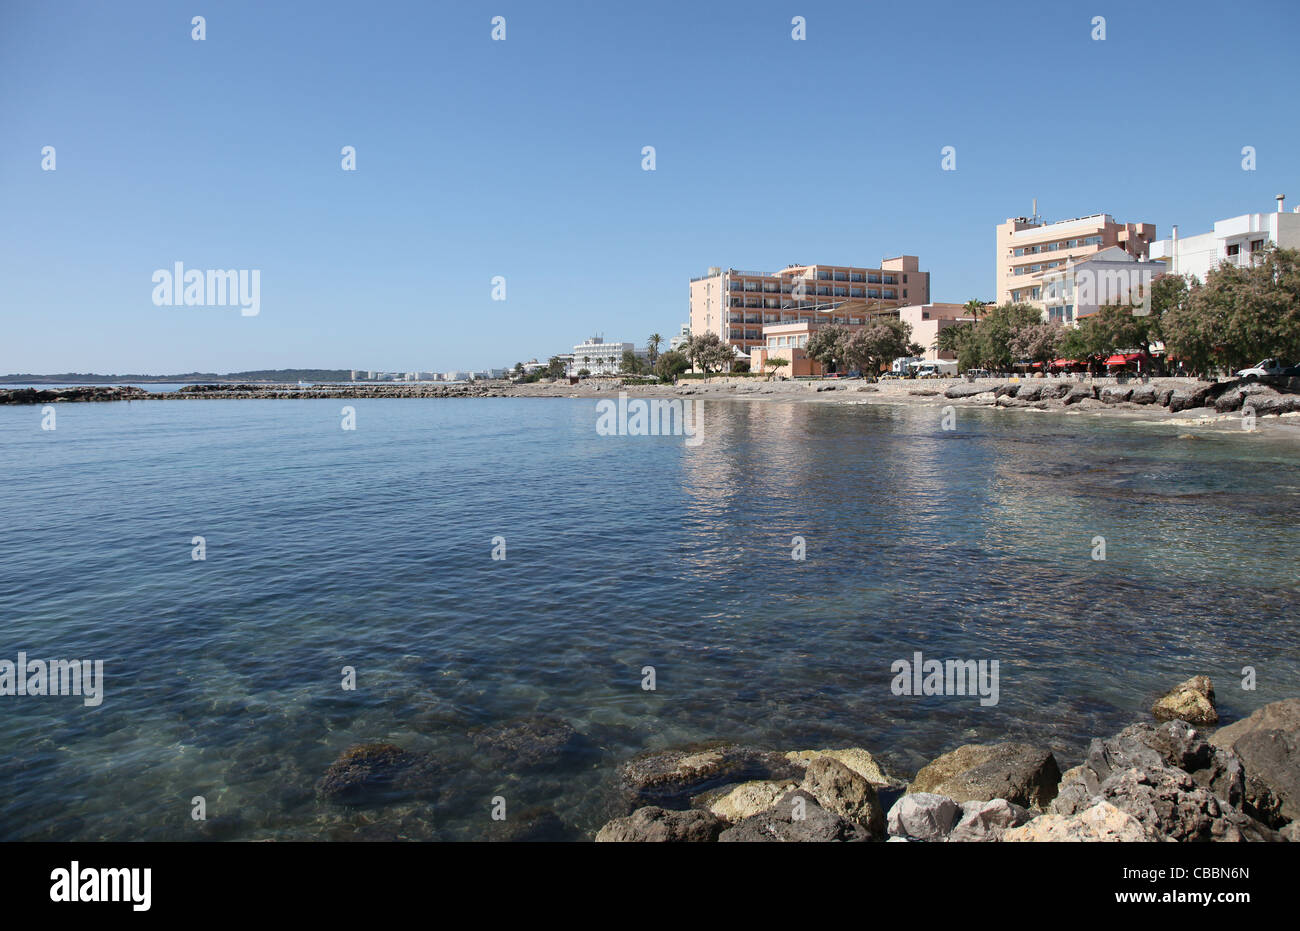 Rocky shoreline at Cala Bona on the Balearic Island of Mallorca. Spain Stock Photo